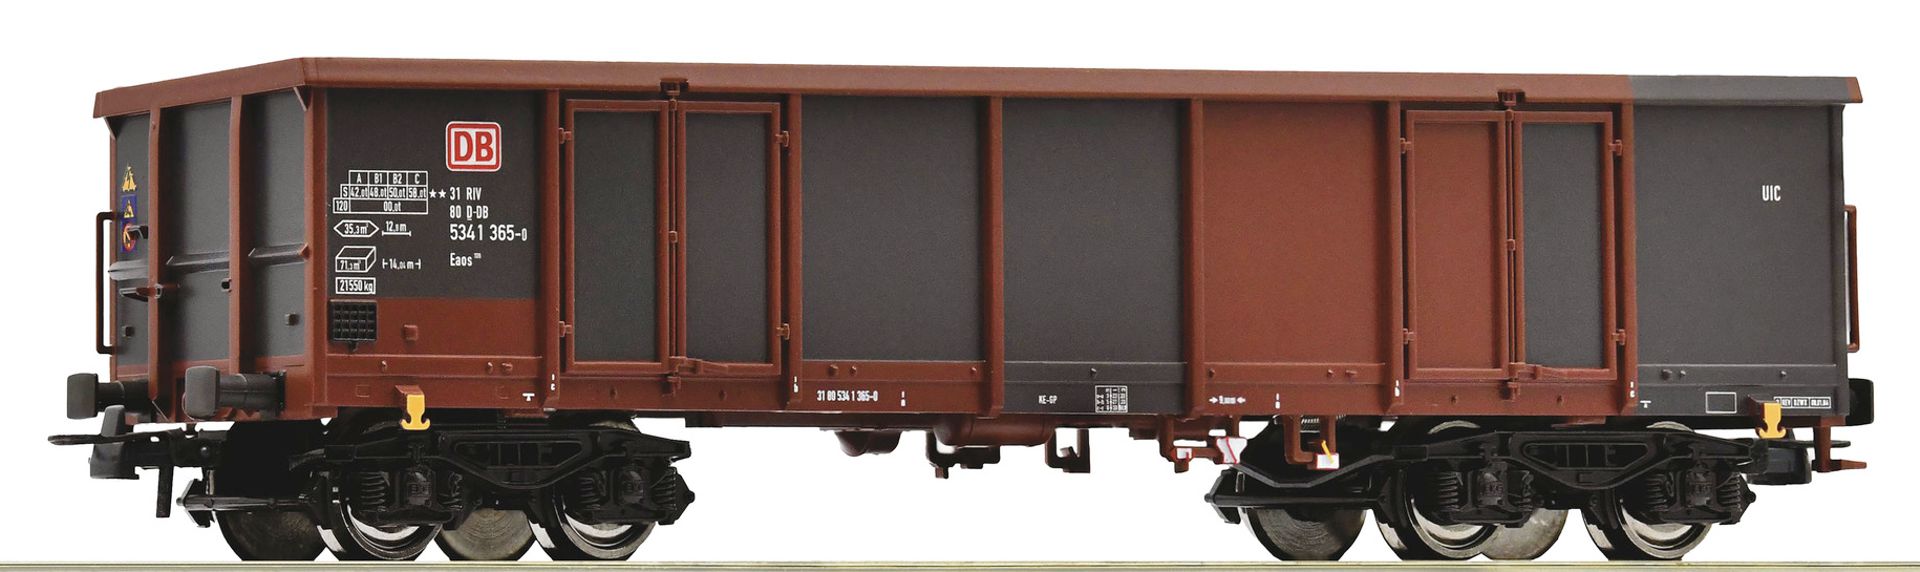 Roco 75861 - Offener Güterwagen Eaos, DBAG, Ep.V-VI, Wagen 3